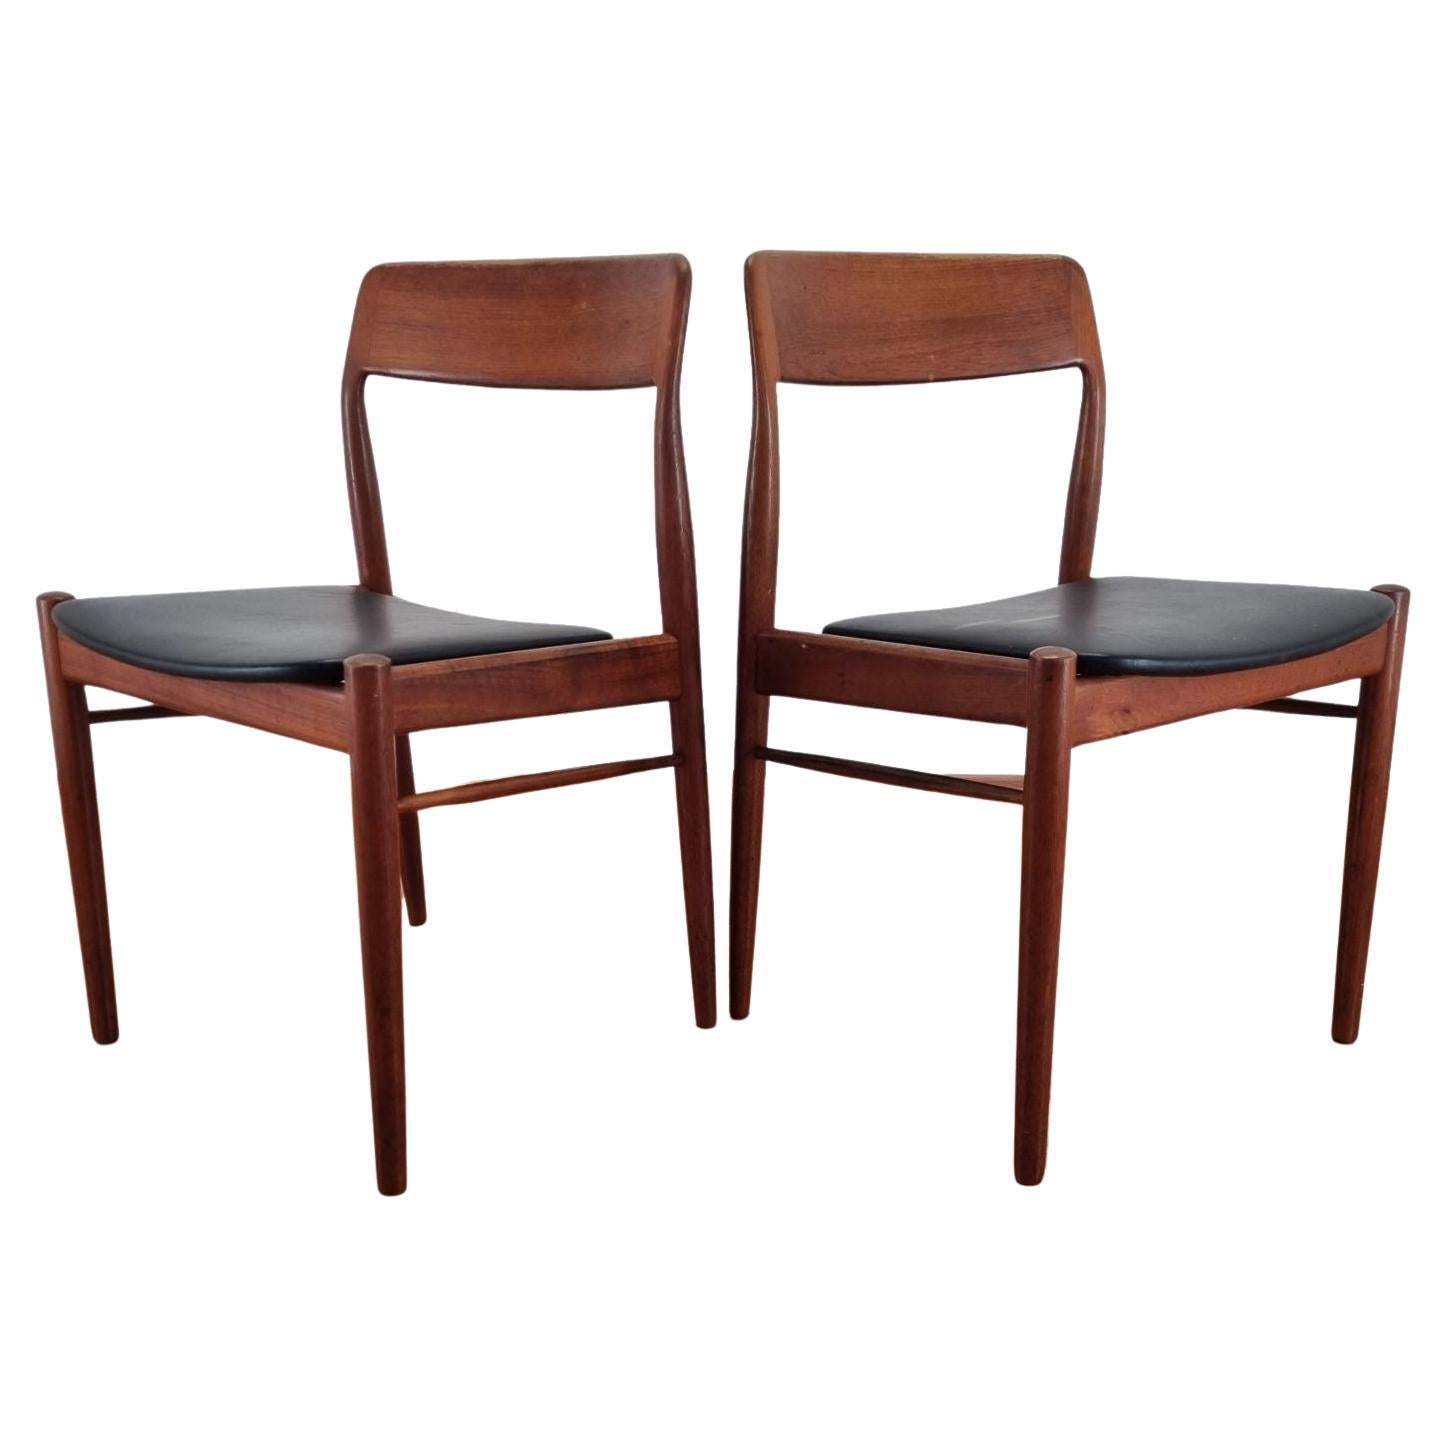 Scandinavian Modern Teak Dining Chairs, Design By Niels Otto Möller, Denmark 60s